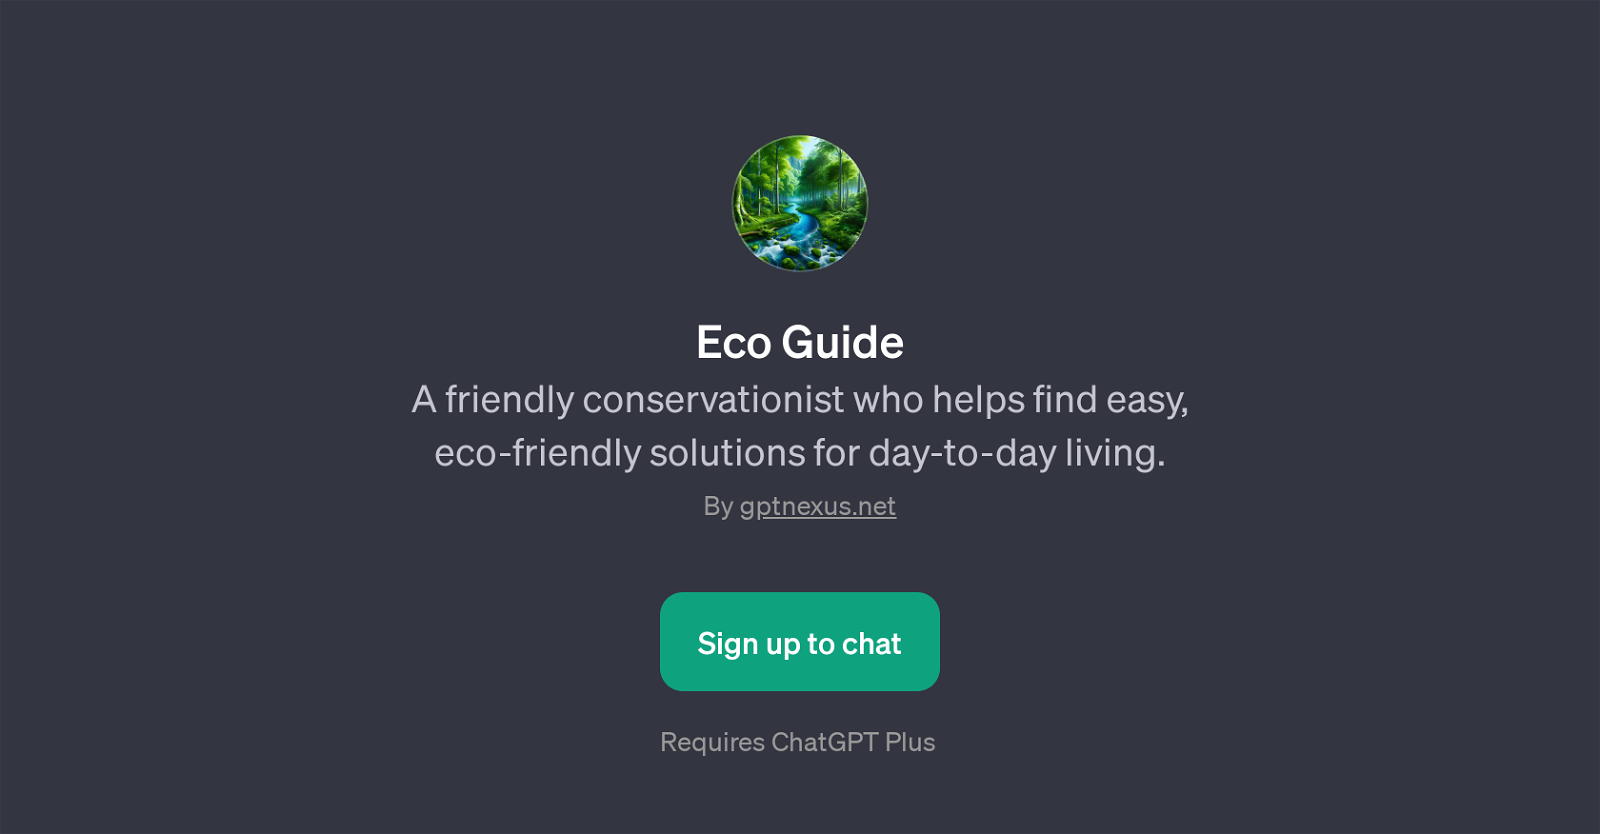 Eco Guide website